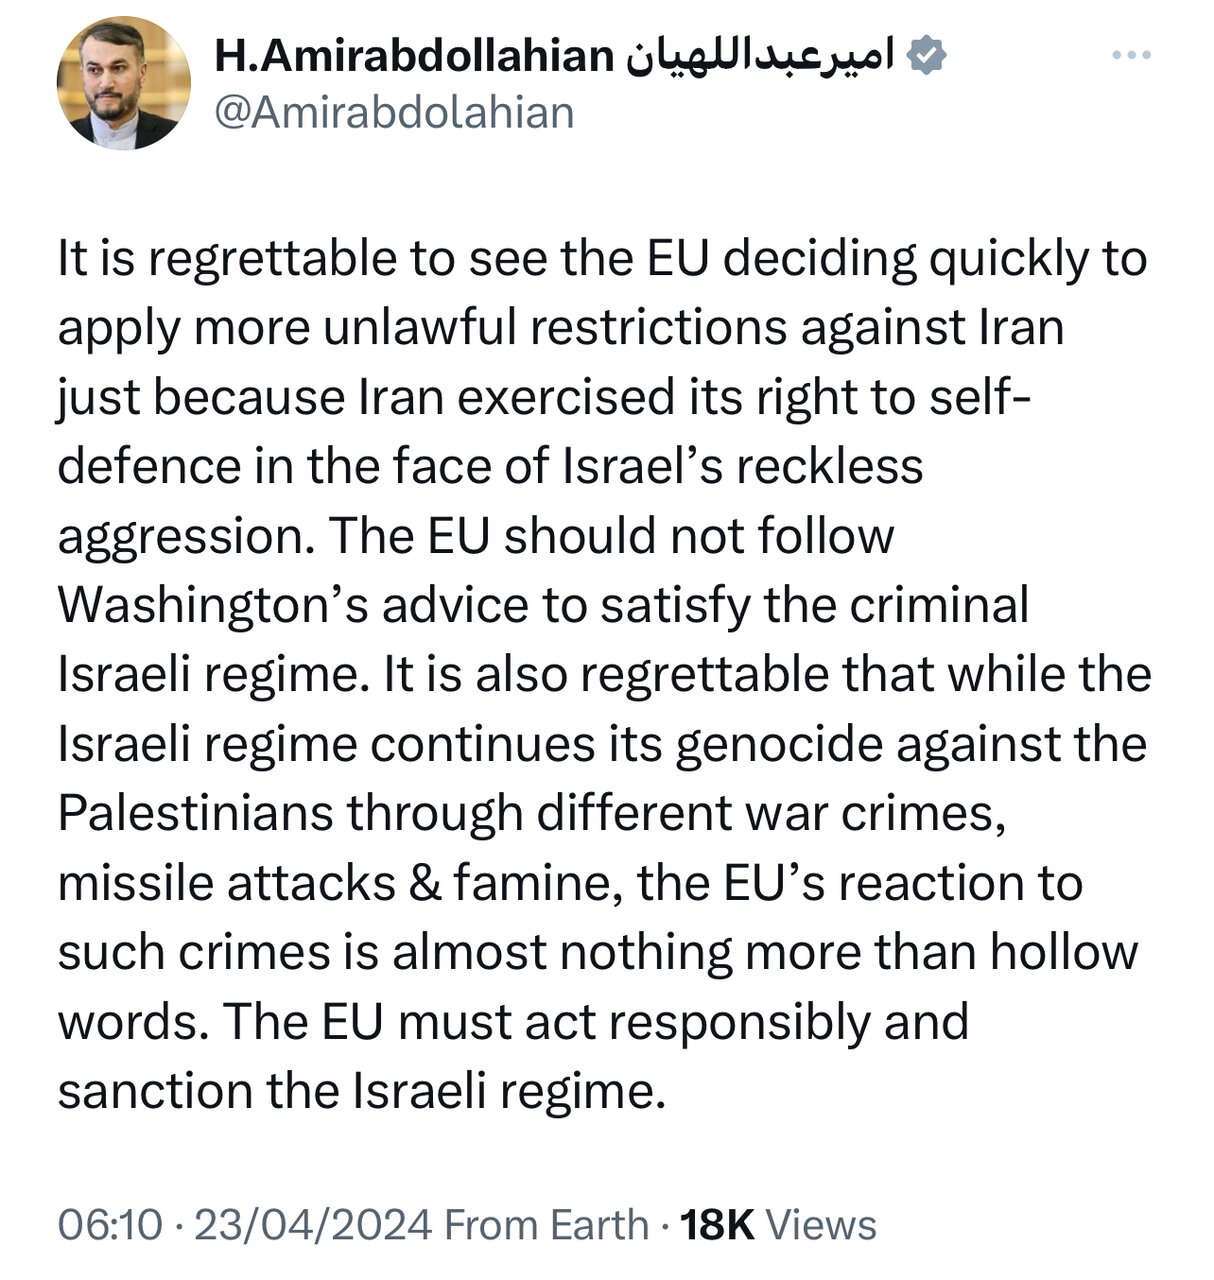 اتحادیه اروپا نباید از توصیه واشنگتن برای رضایت رژیم جنایتکار اسرائیل پیروی کند